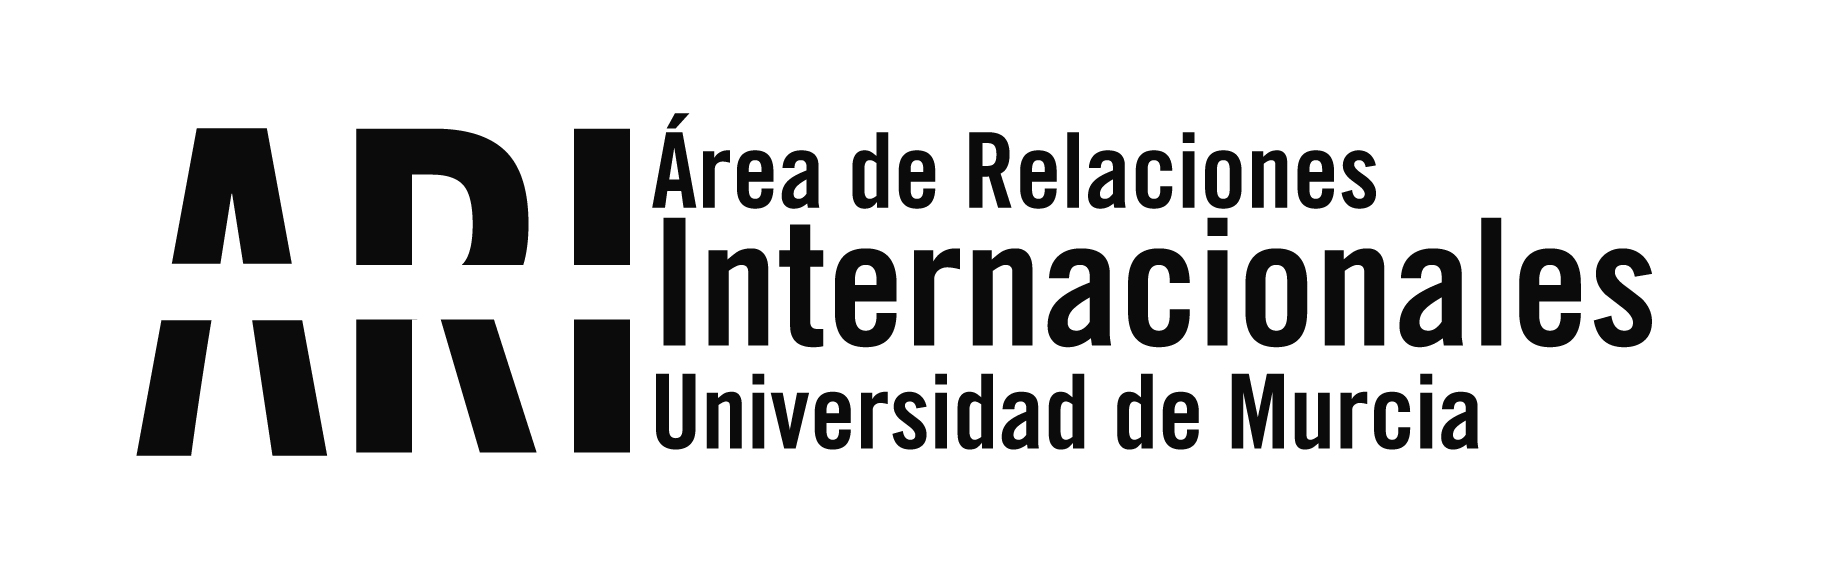 V Concurso Santander Ingenio - Área de Relaciones Internacionales